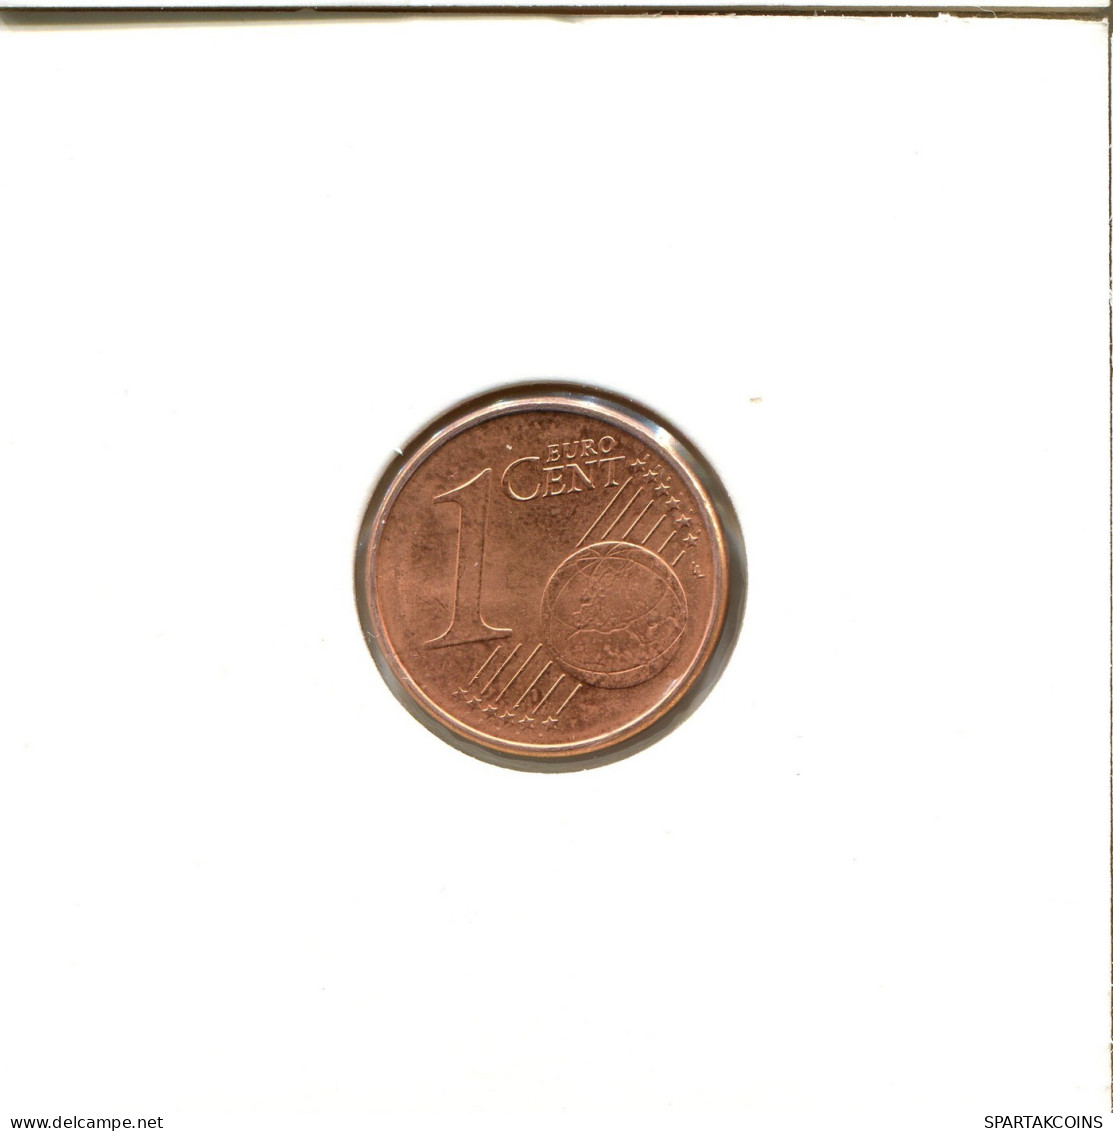 1 EURO CENT 2007 ALEMANIA Moneda GERMANY #EU131.E.A - Allemagne